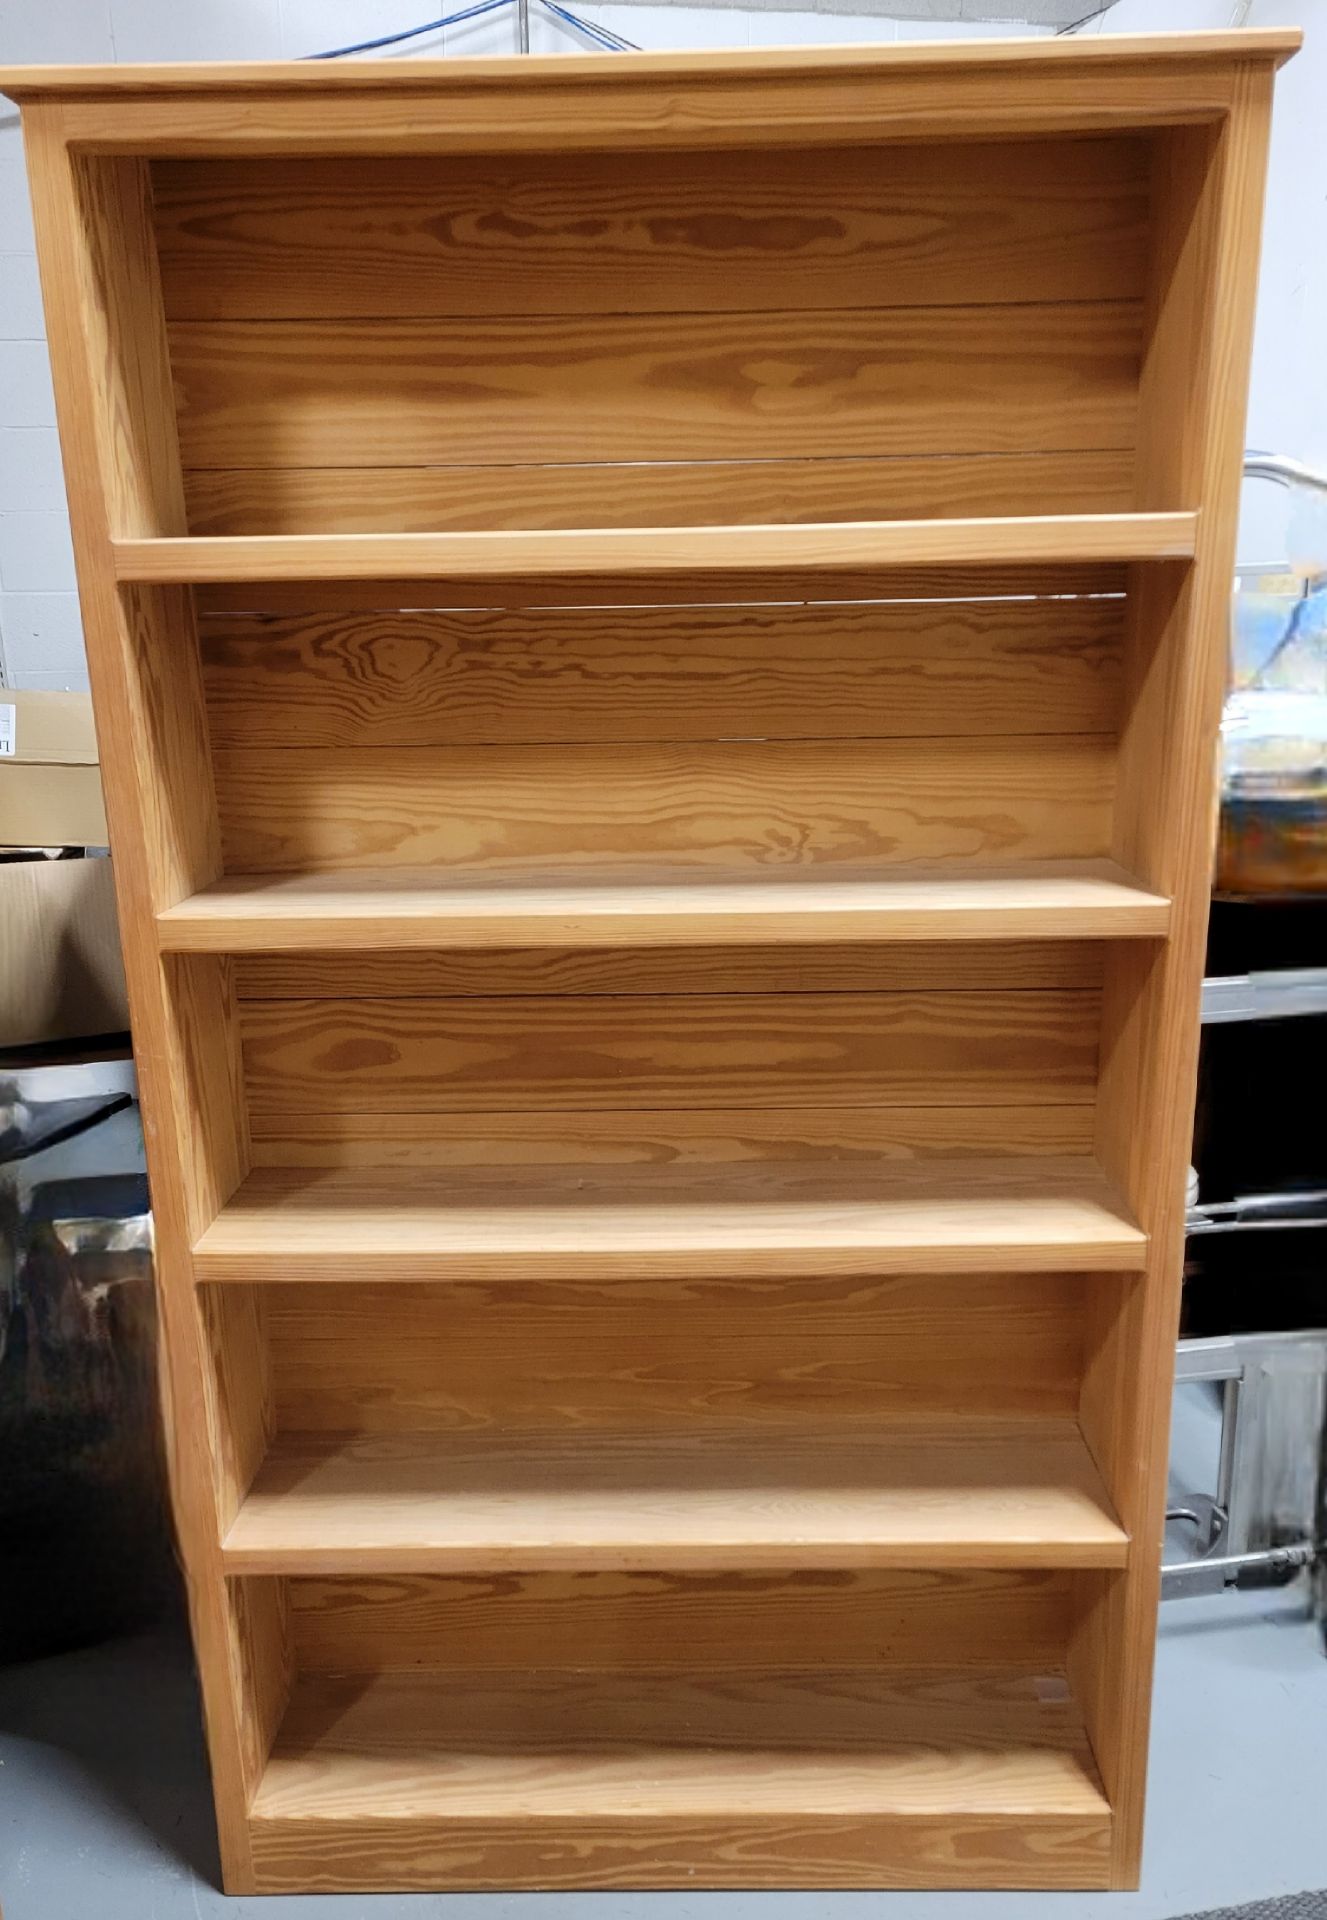 Crate Design 5 Shelf Bookcase 72" h x 42" w x 10" D - MSRP $900